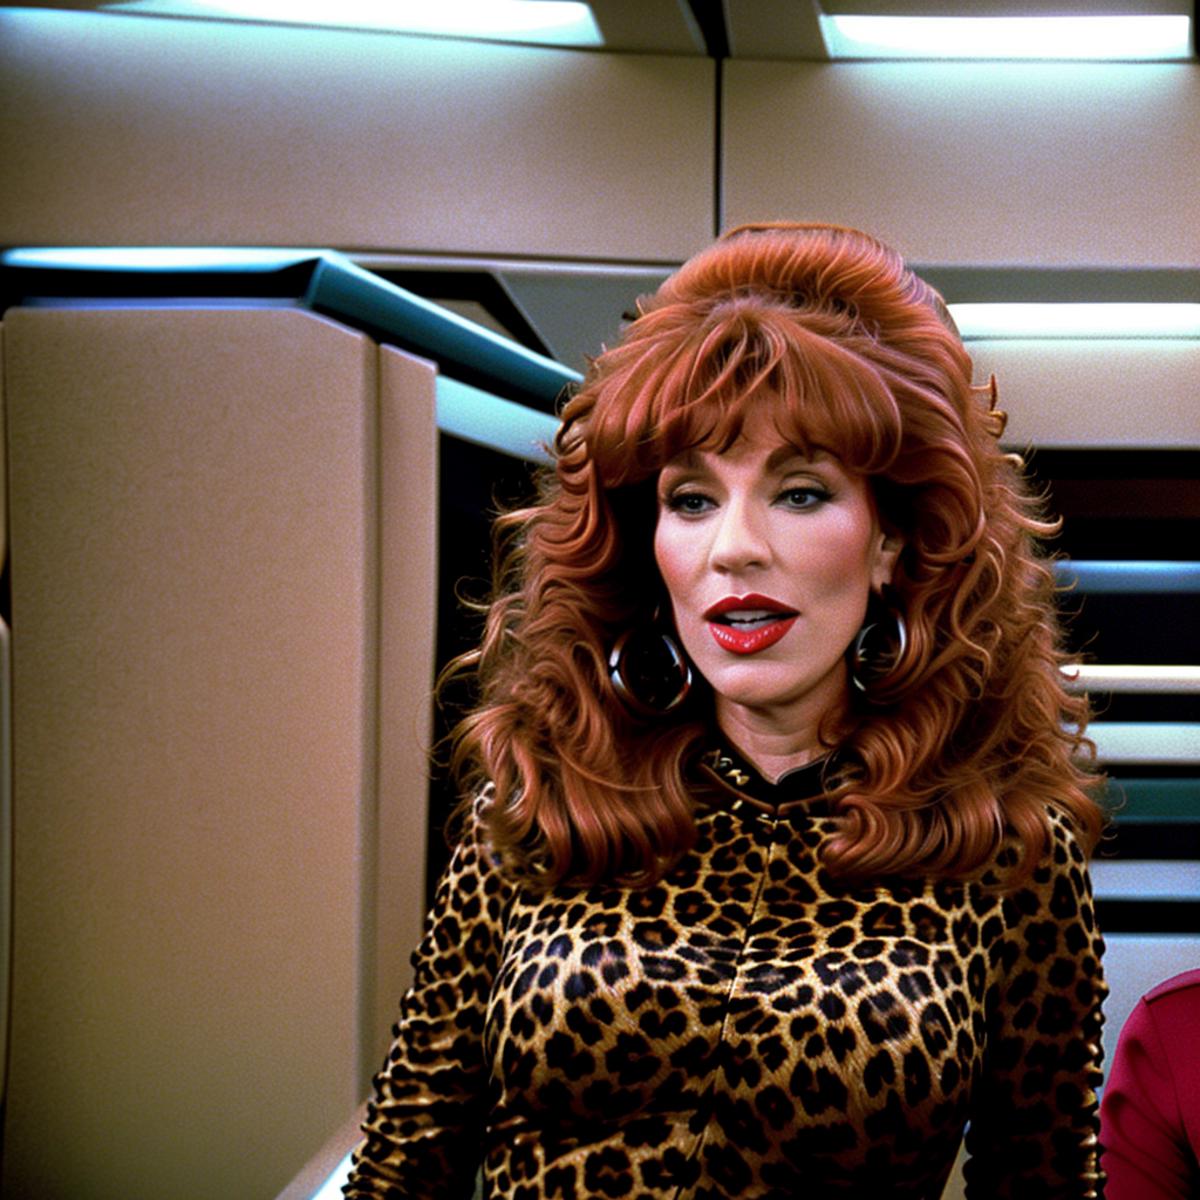 Star Trek TNG uniforms(captains variant update) image by welbornzz897